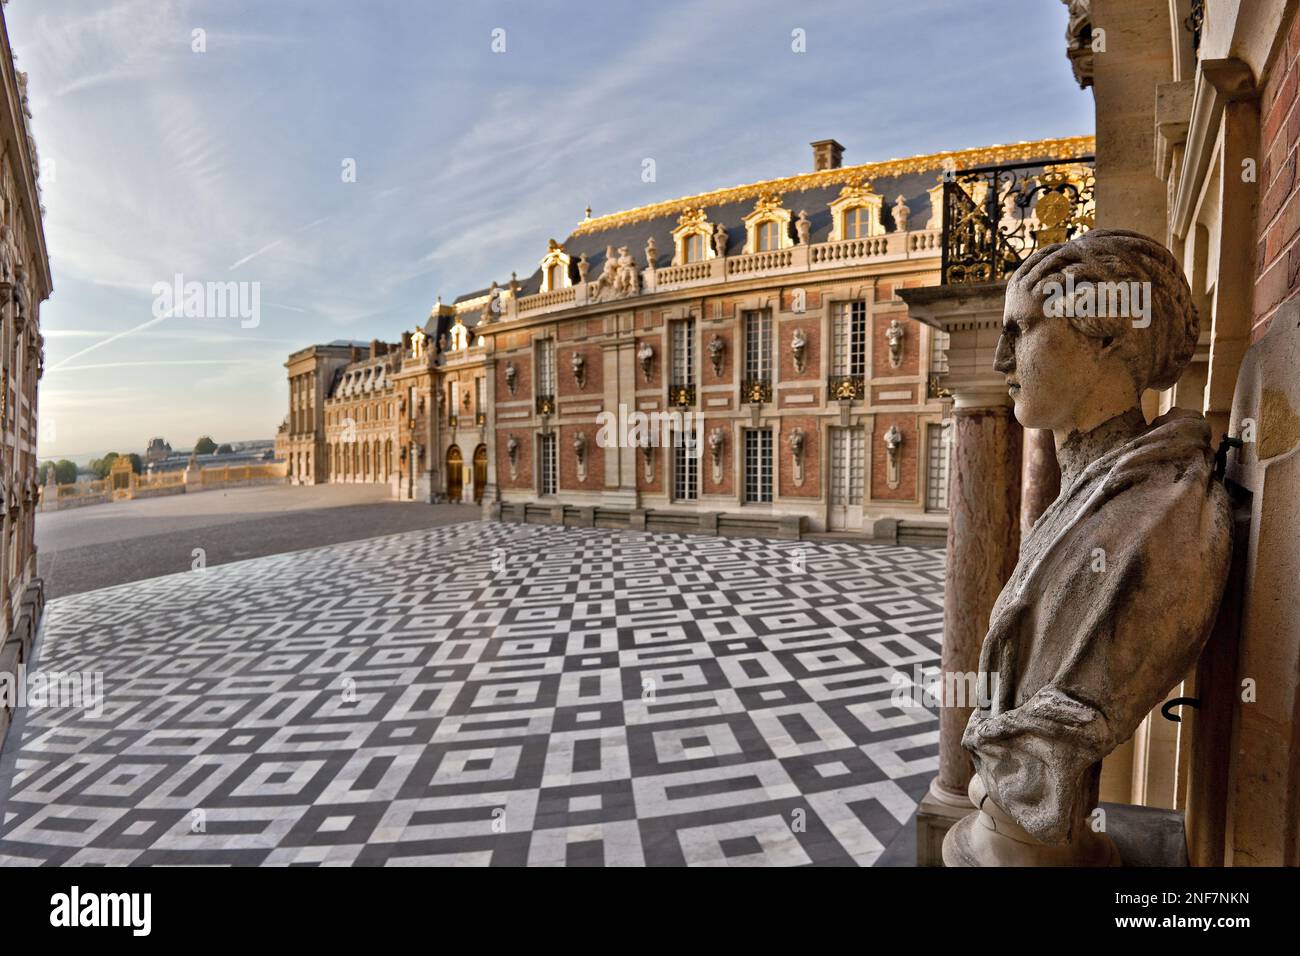 Depuis le nord ouest, vue de la cour de Marbre, vitrine bleblouissante des mariages de materiaux et des infinis jeux de couleurs a Versailles. Foto Stock